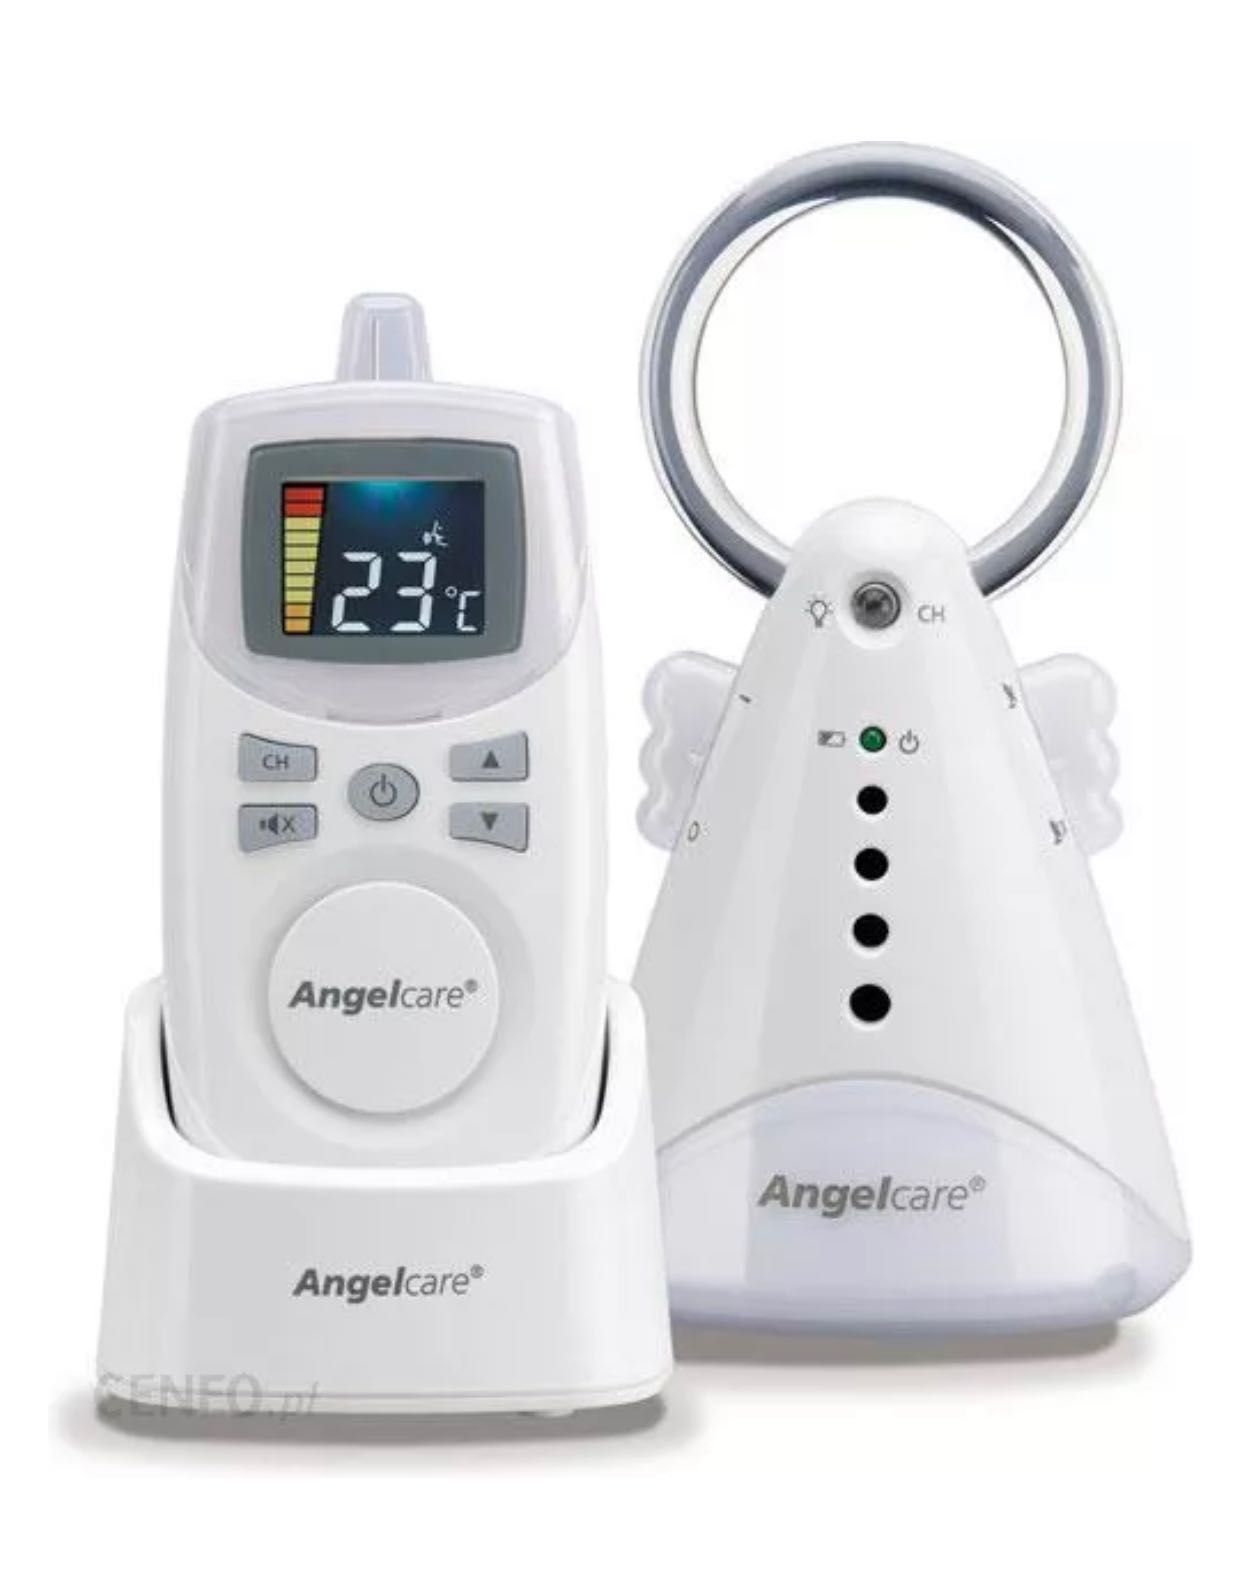 Cyfrowa Niania Elektroniczna Angelcare     Ac420 - stan idealny